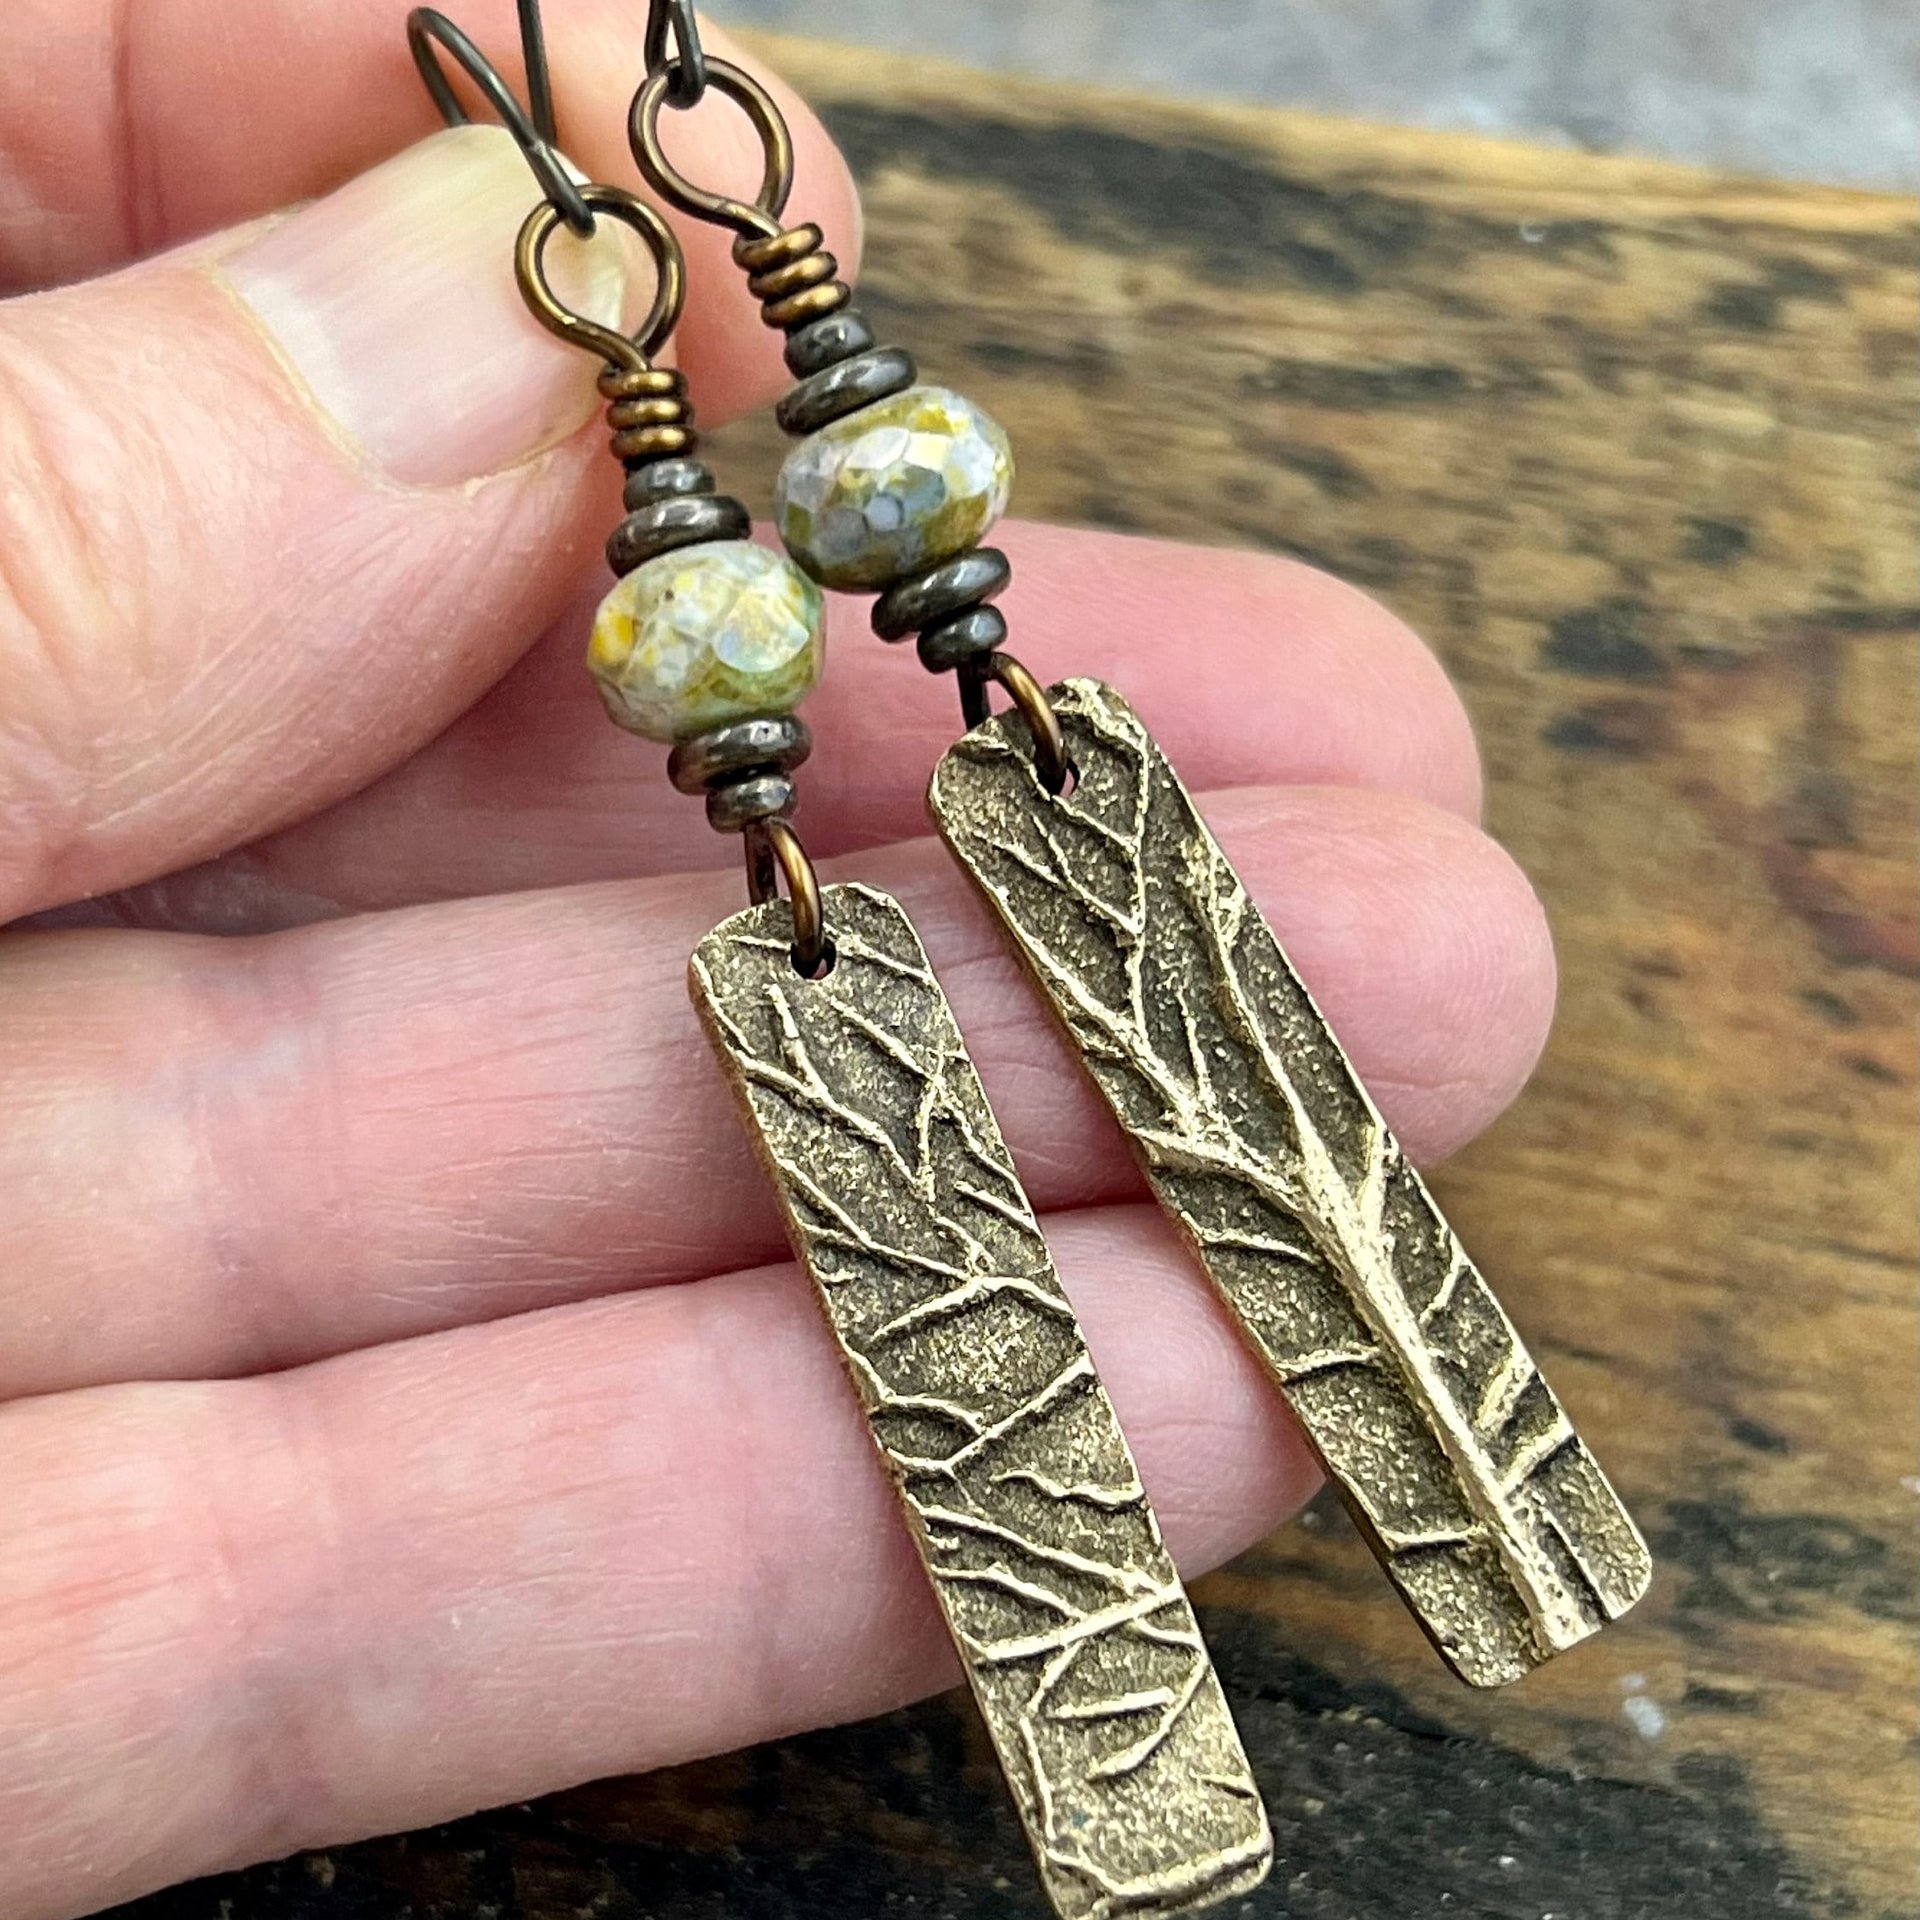 Tree Branch Earrings, Long Bronze Earrings, Czech Glass Beads, Green Witch, Pagan Celtic Druid, Earthy Organic, Handcrafted Art Jewelry